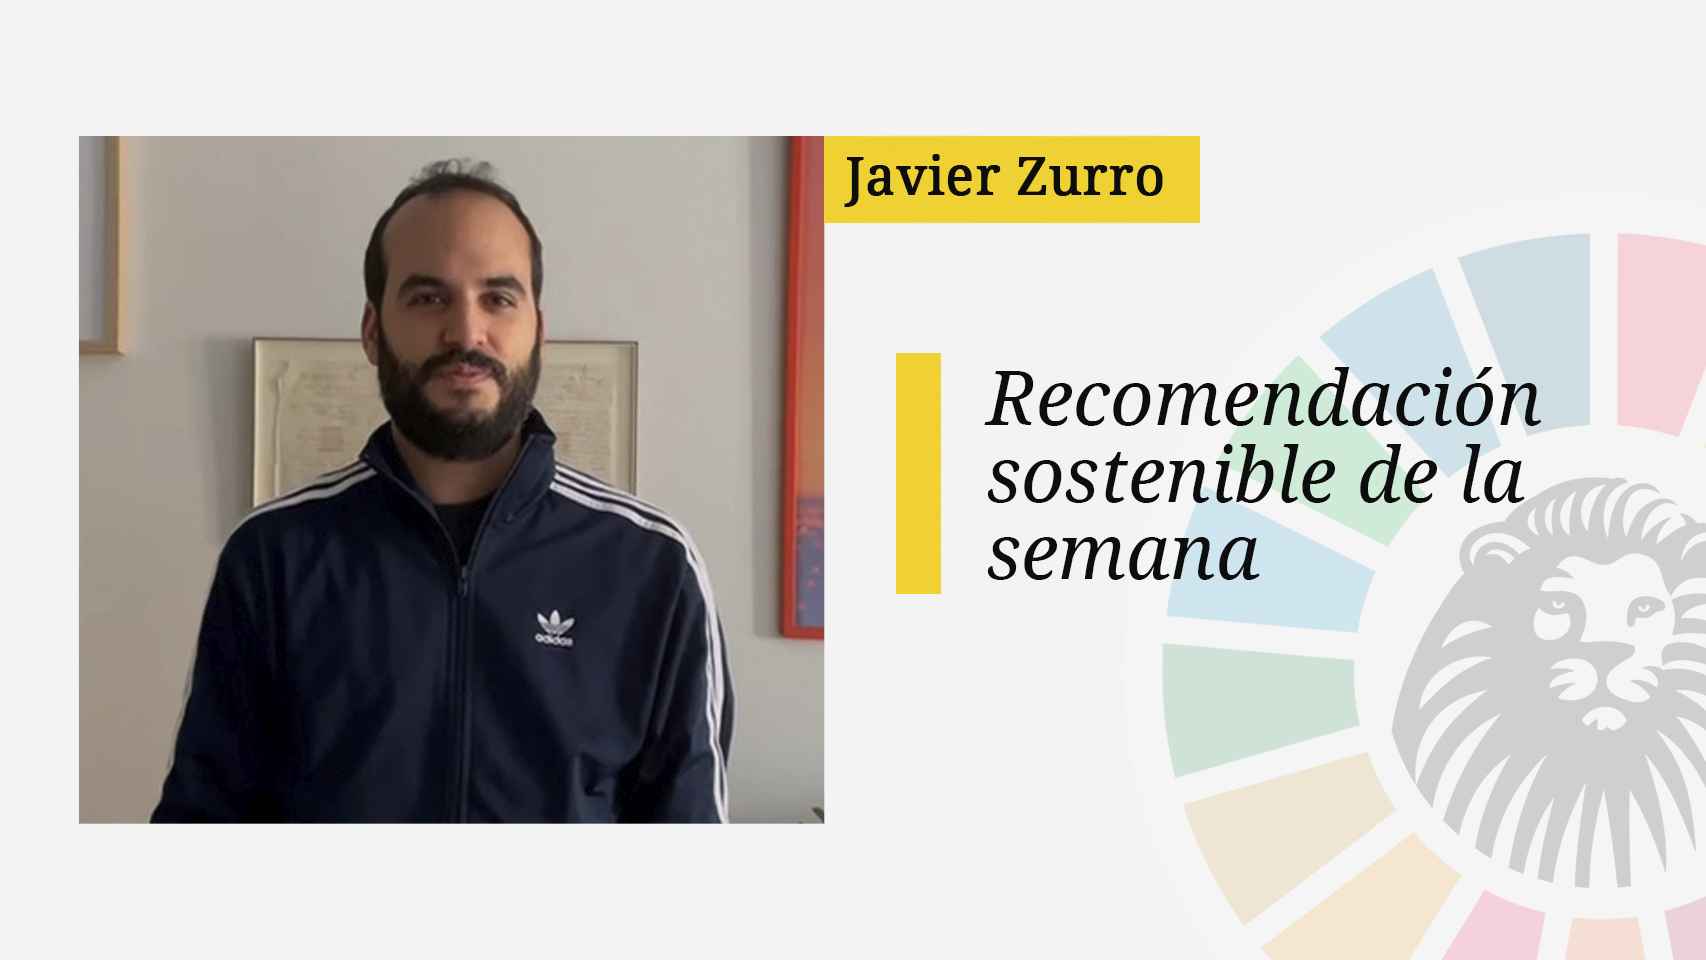 La recomendación sostenible de Javier Zurro